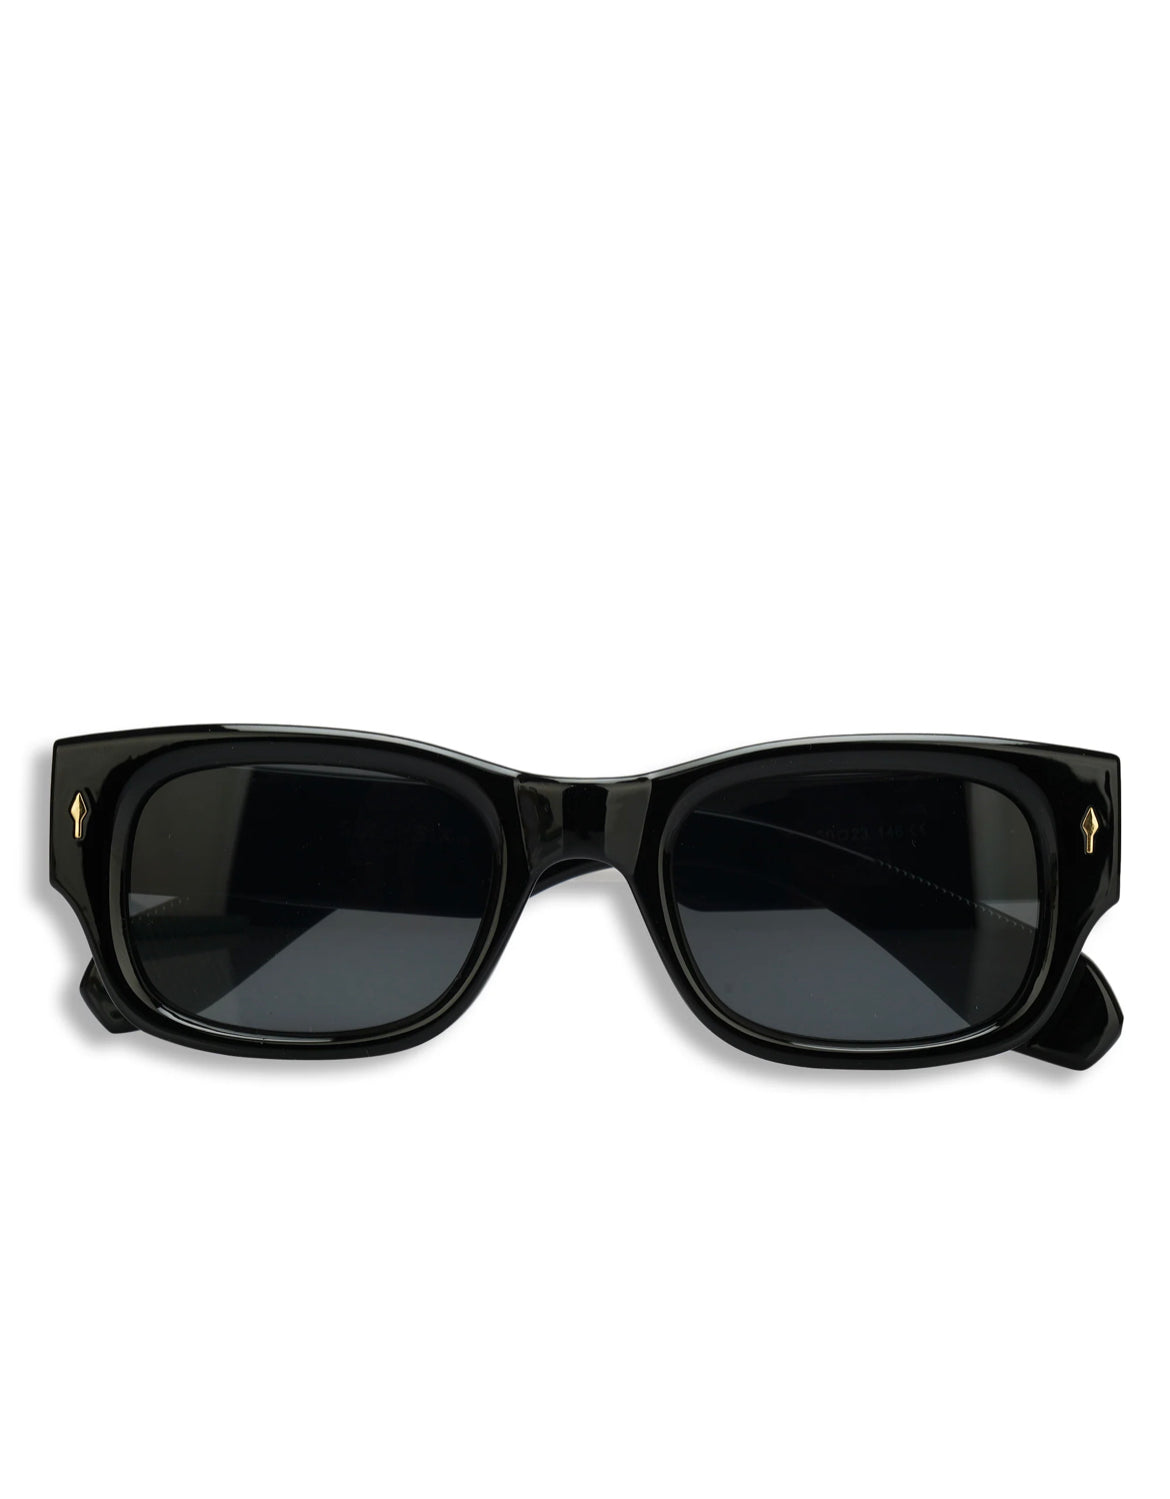 Rivet Frame Square lens sunglasses